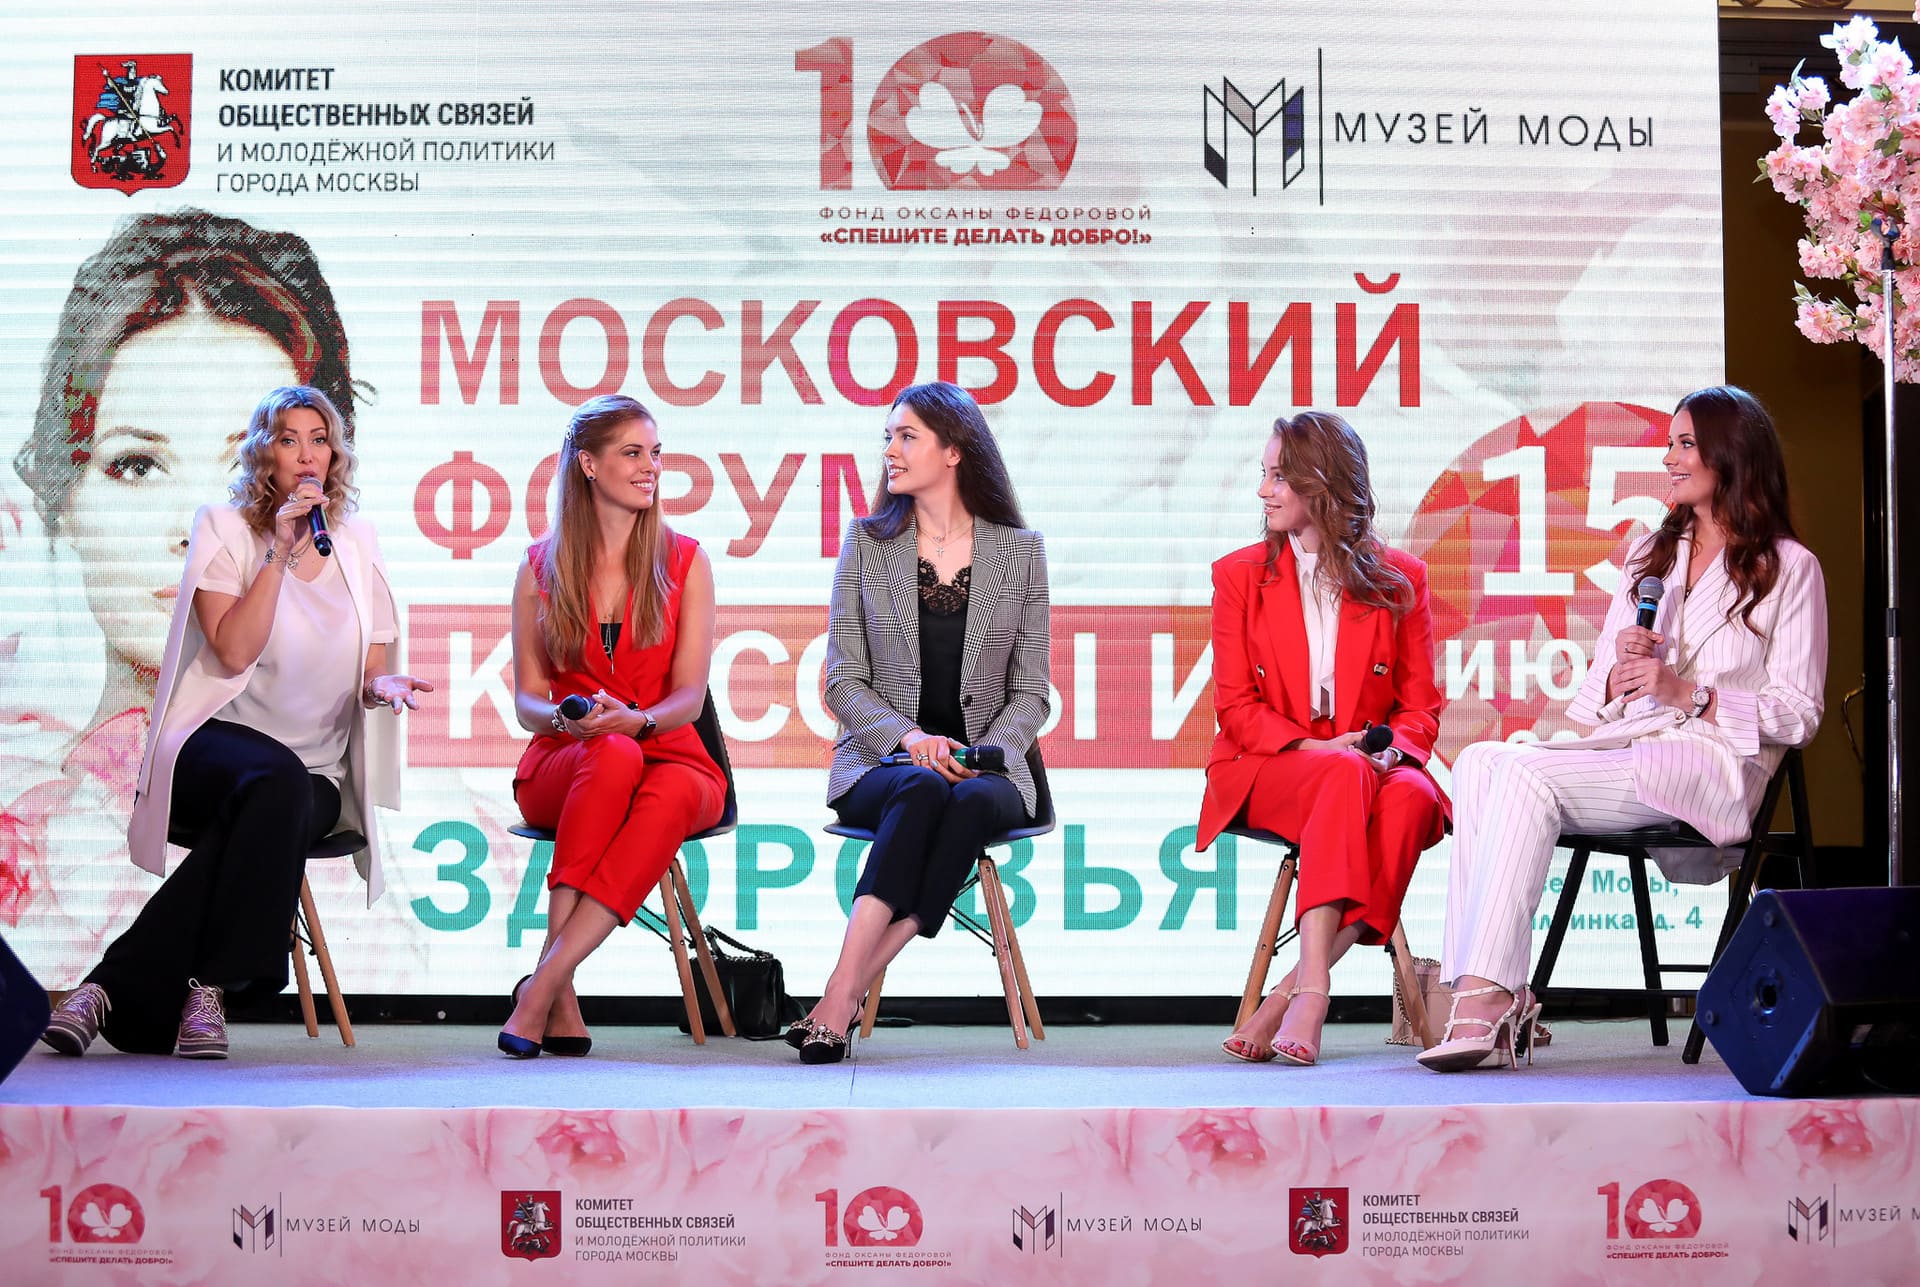 Первый Московский форум красоты и здоровья